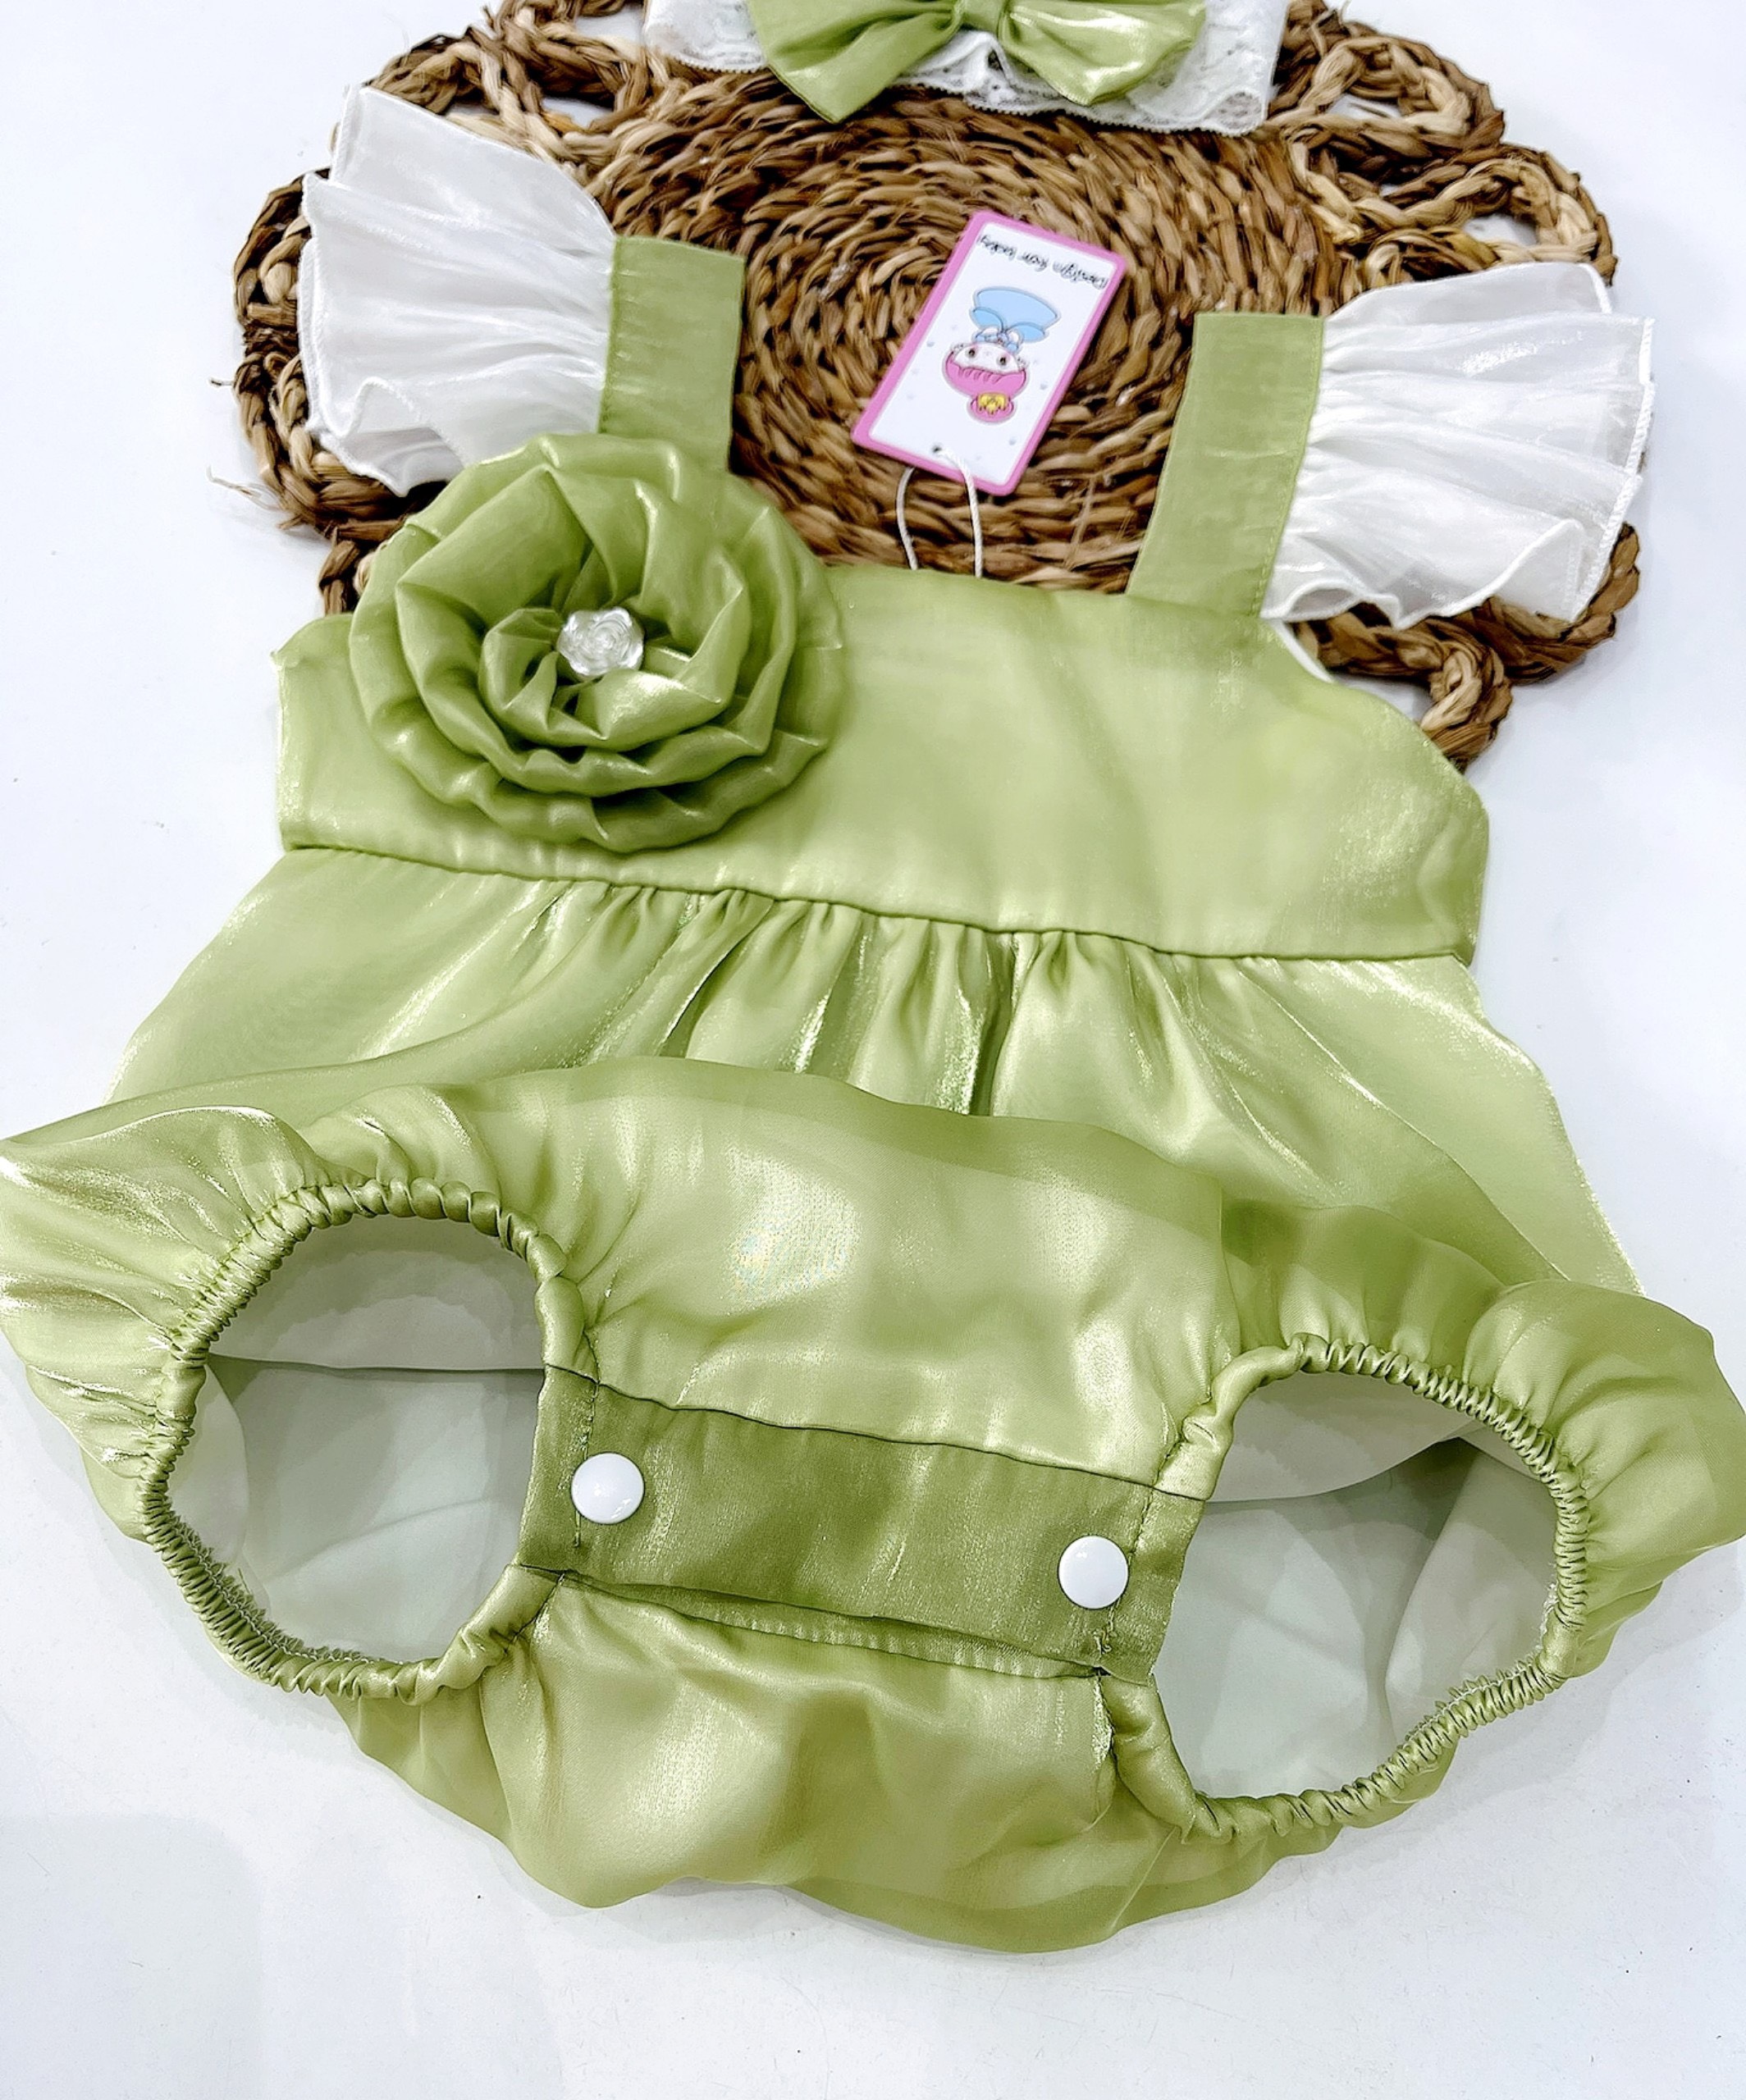 Body cánh tiên xanh bơ vải tơ Organza mềm mại tặng kèm phụ kiện xinh cho bé gái sơ sinh-12kg